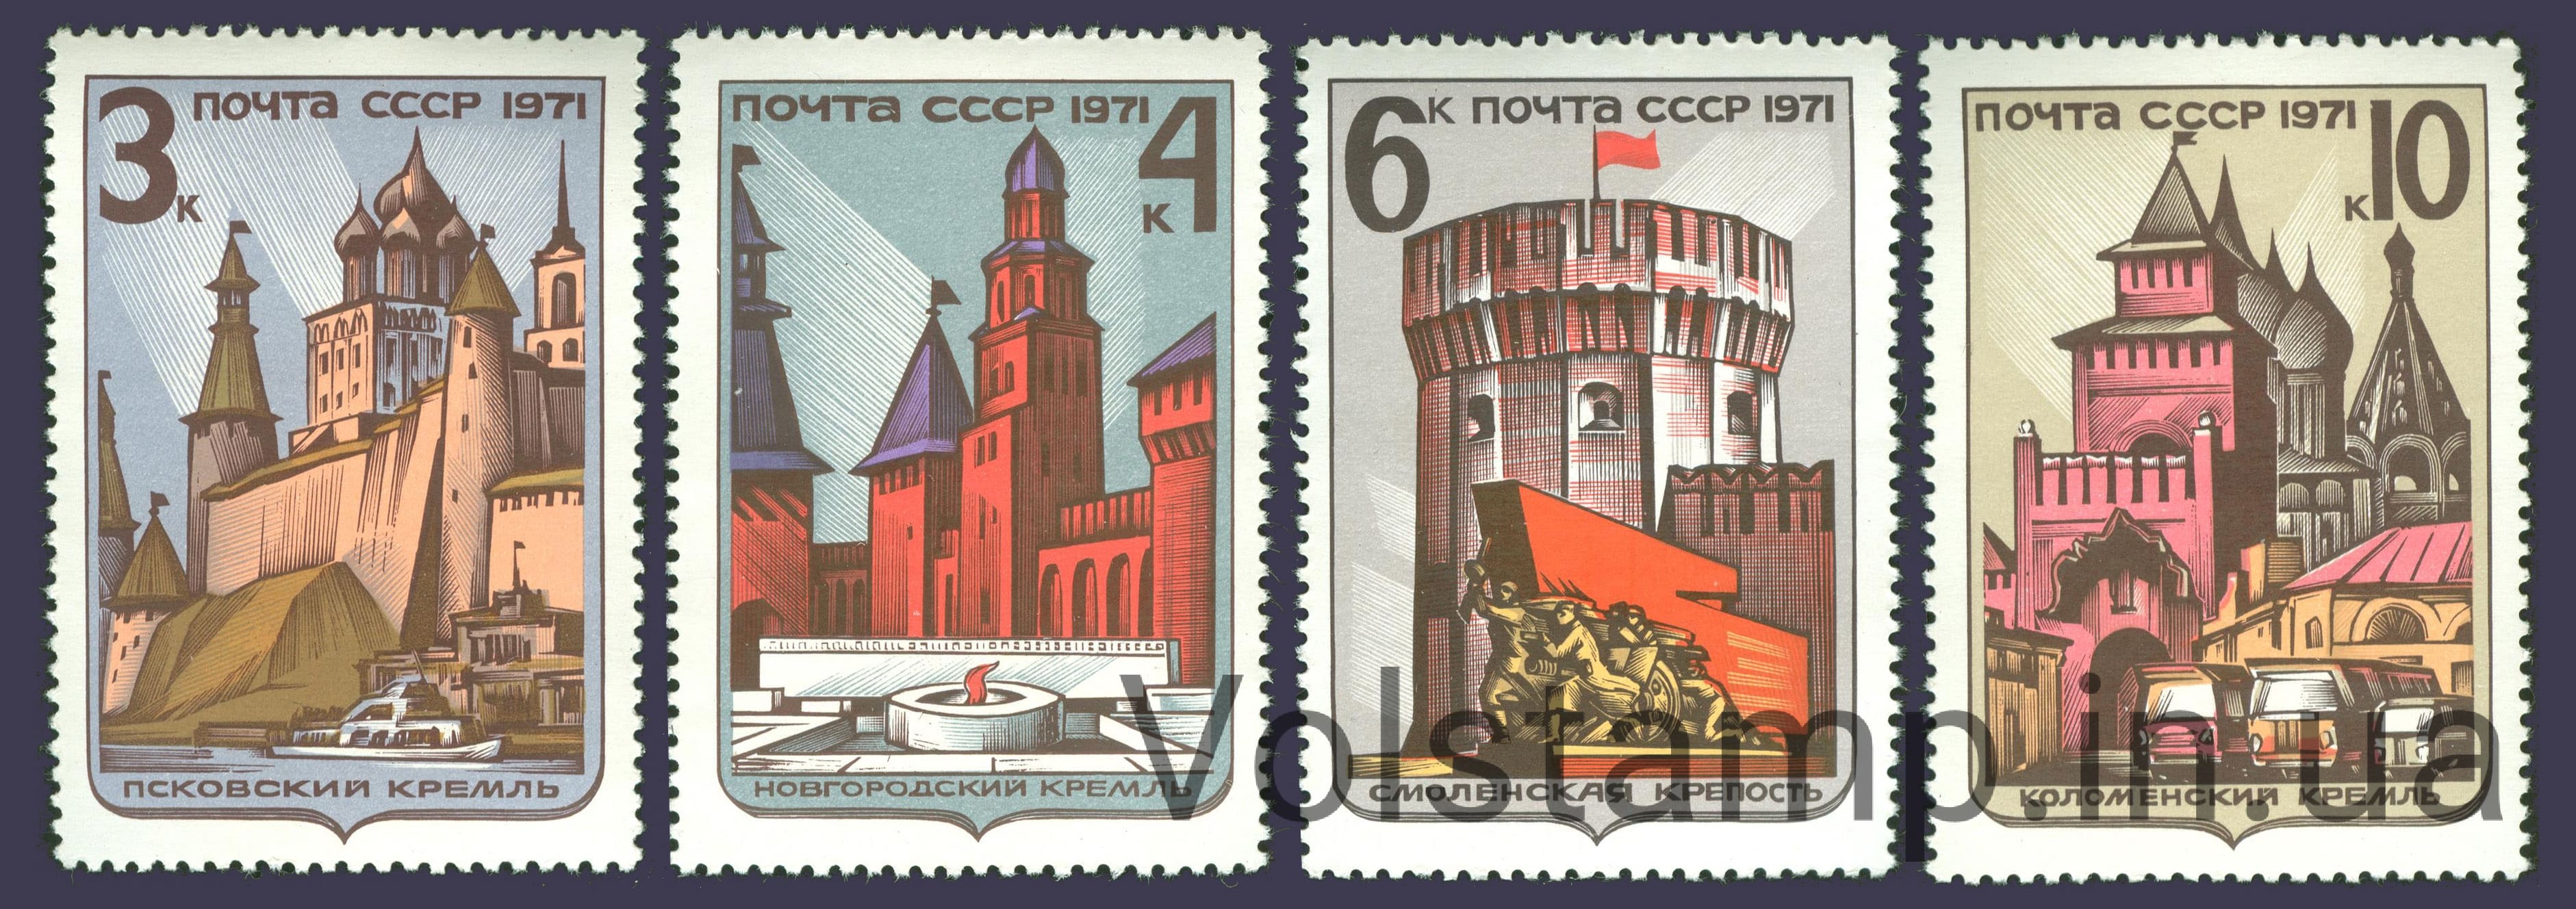 1971 серия марок Историко-архитектурные памятники России №3993-3996